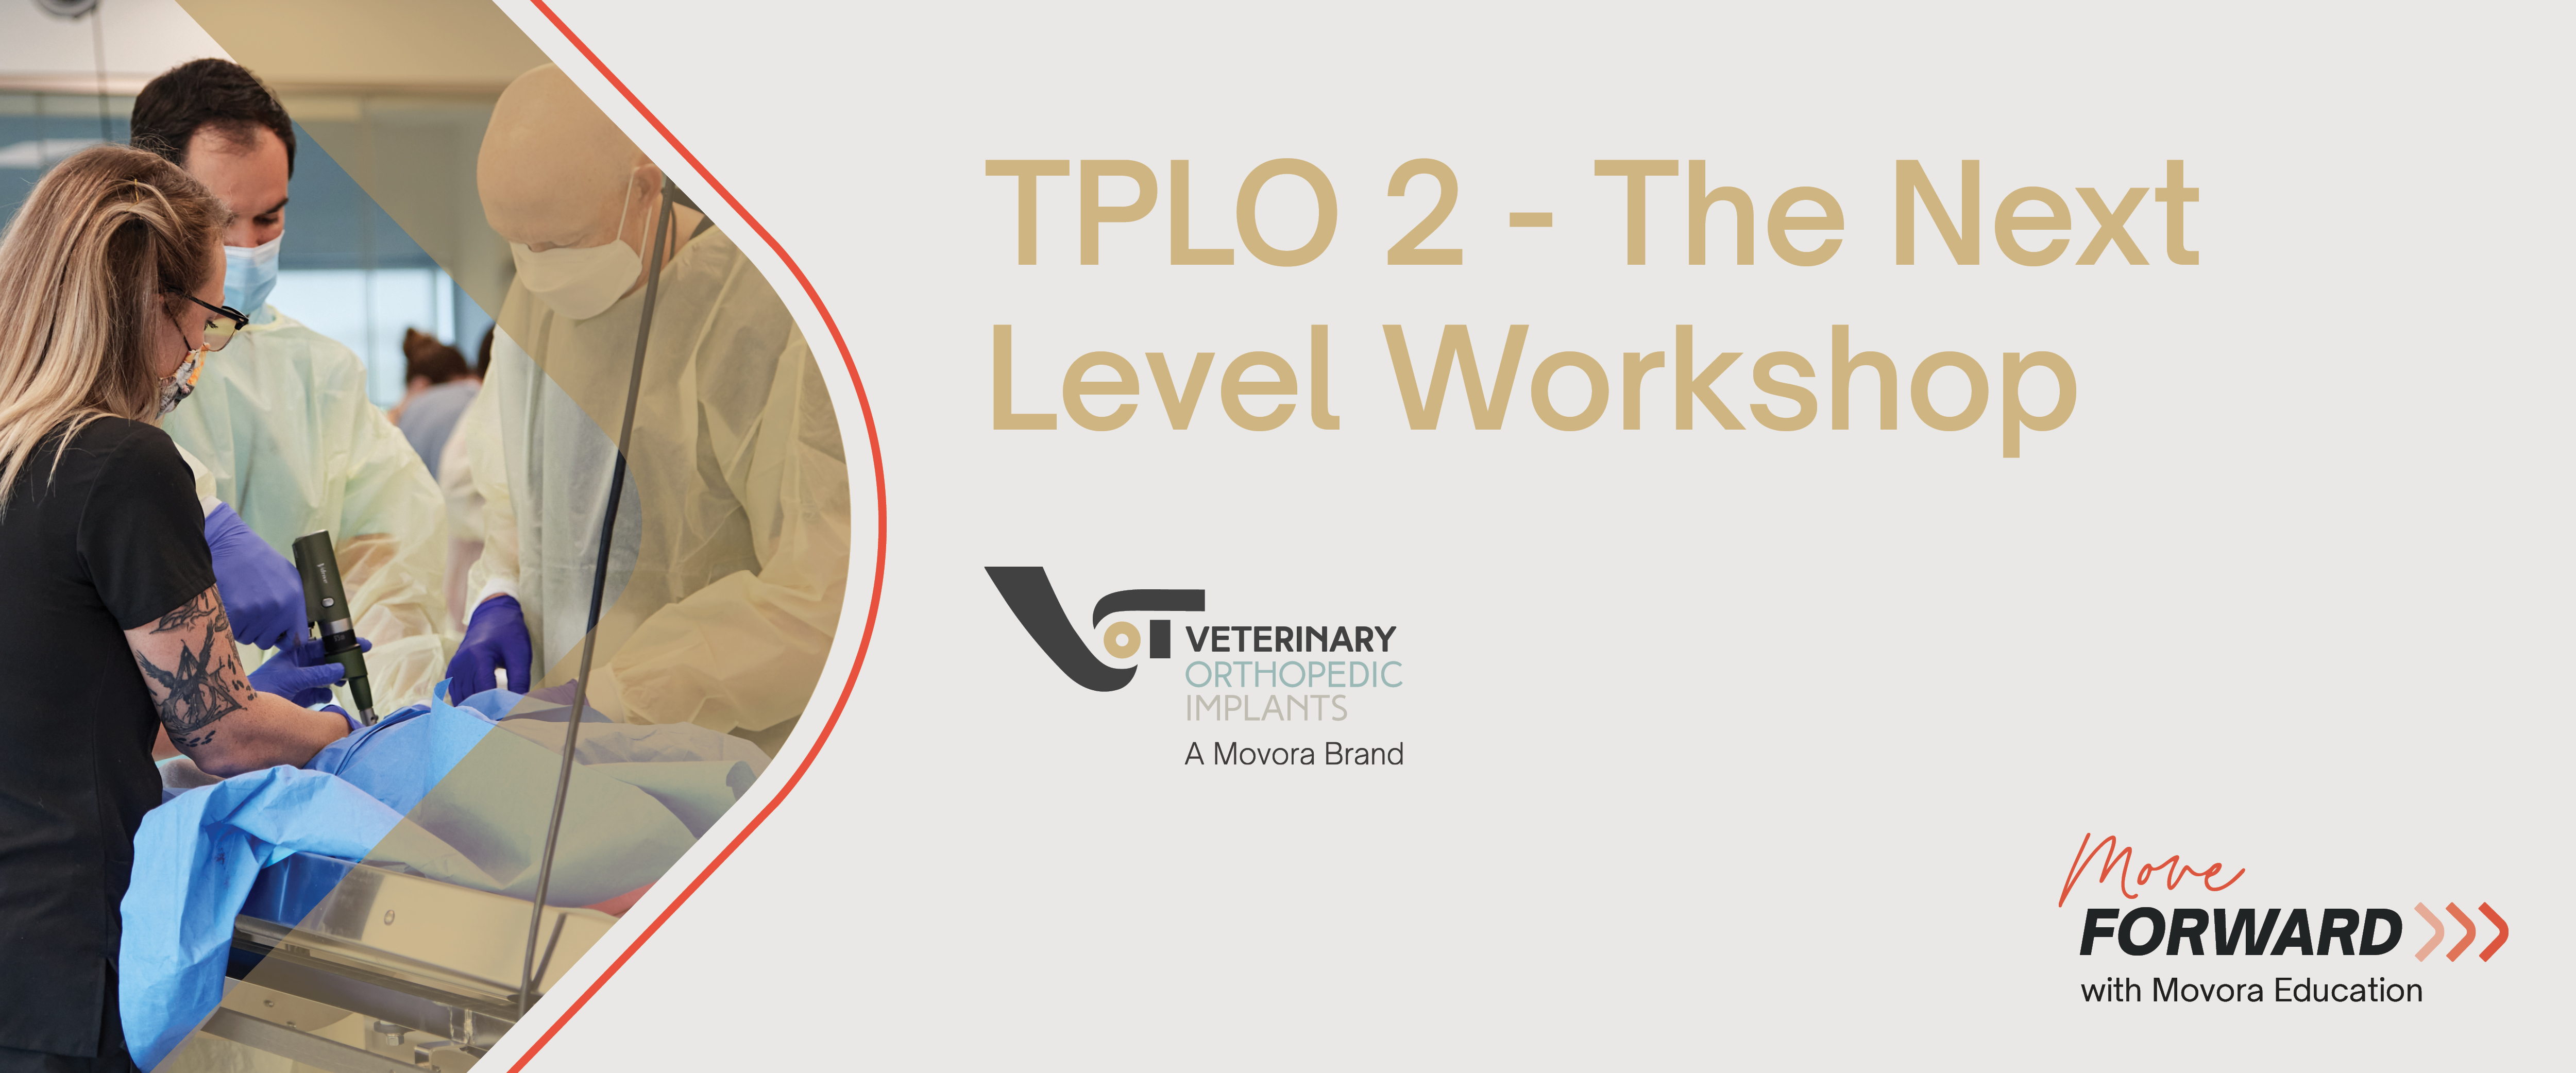 VOI TPLO 2 - the next level workshop banner